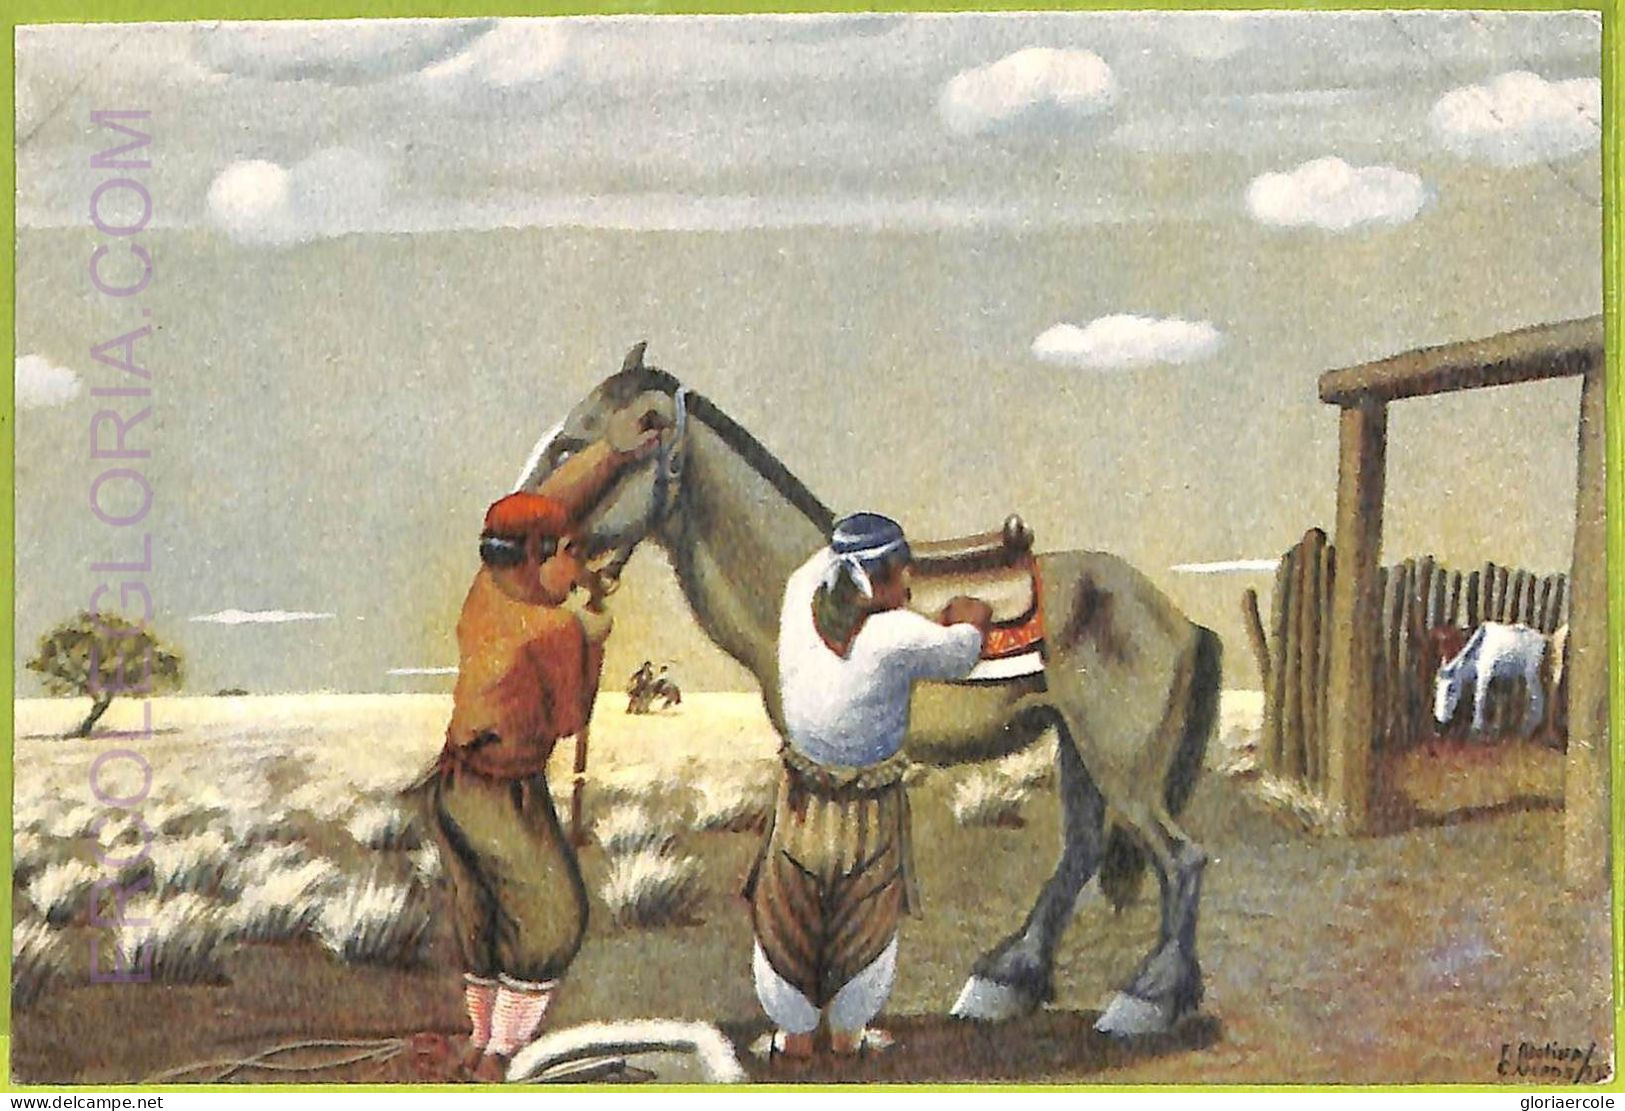 Af1165 - ARGENTINA - Vintage Postcard - Ethnic - Amerika